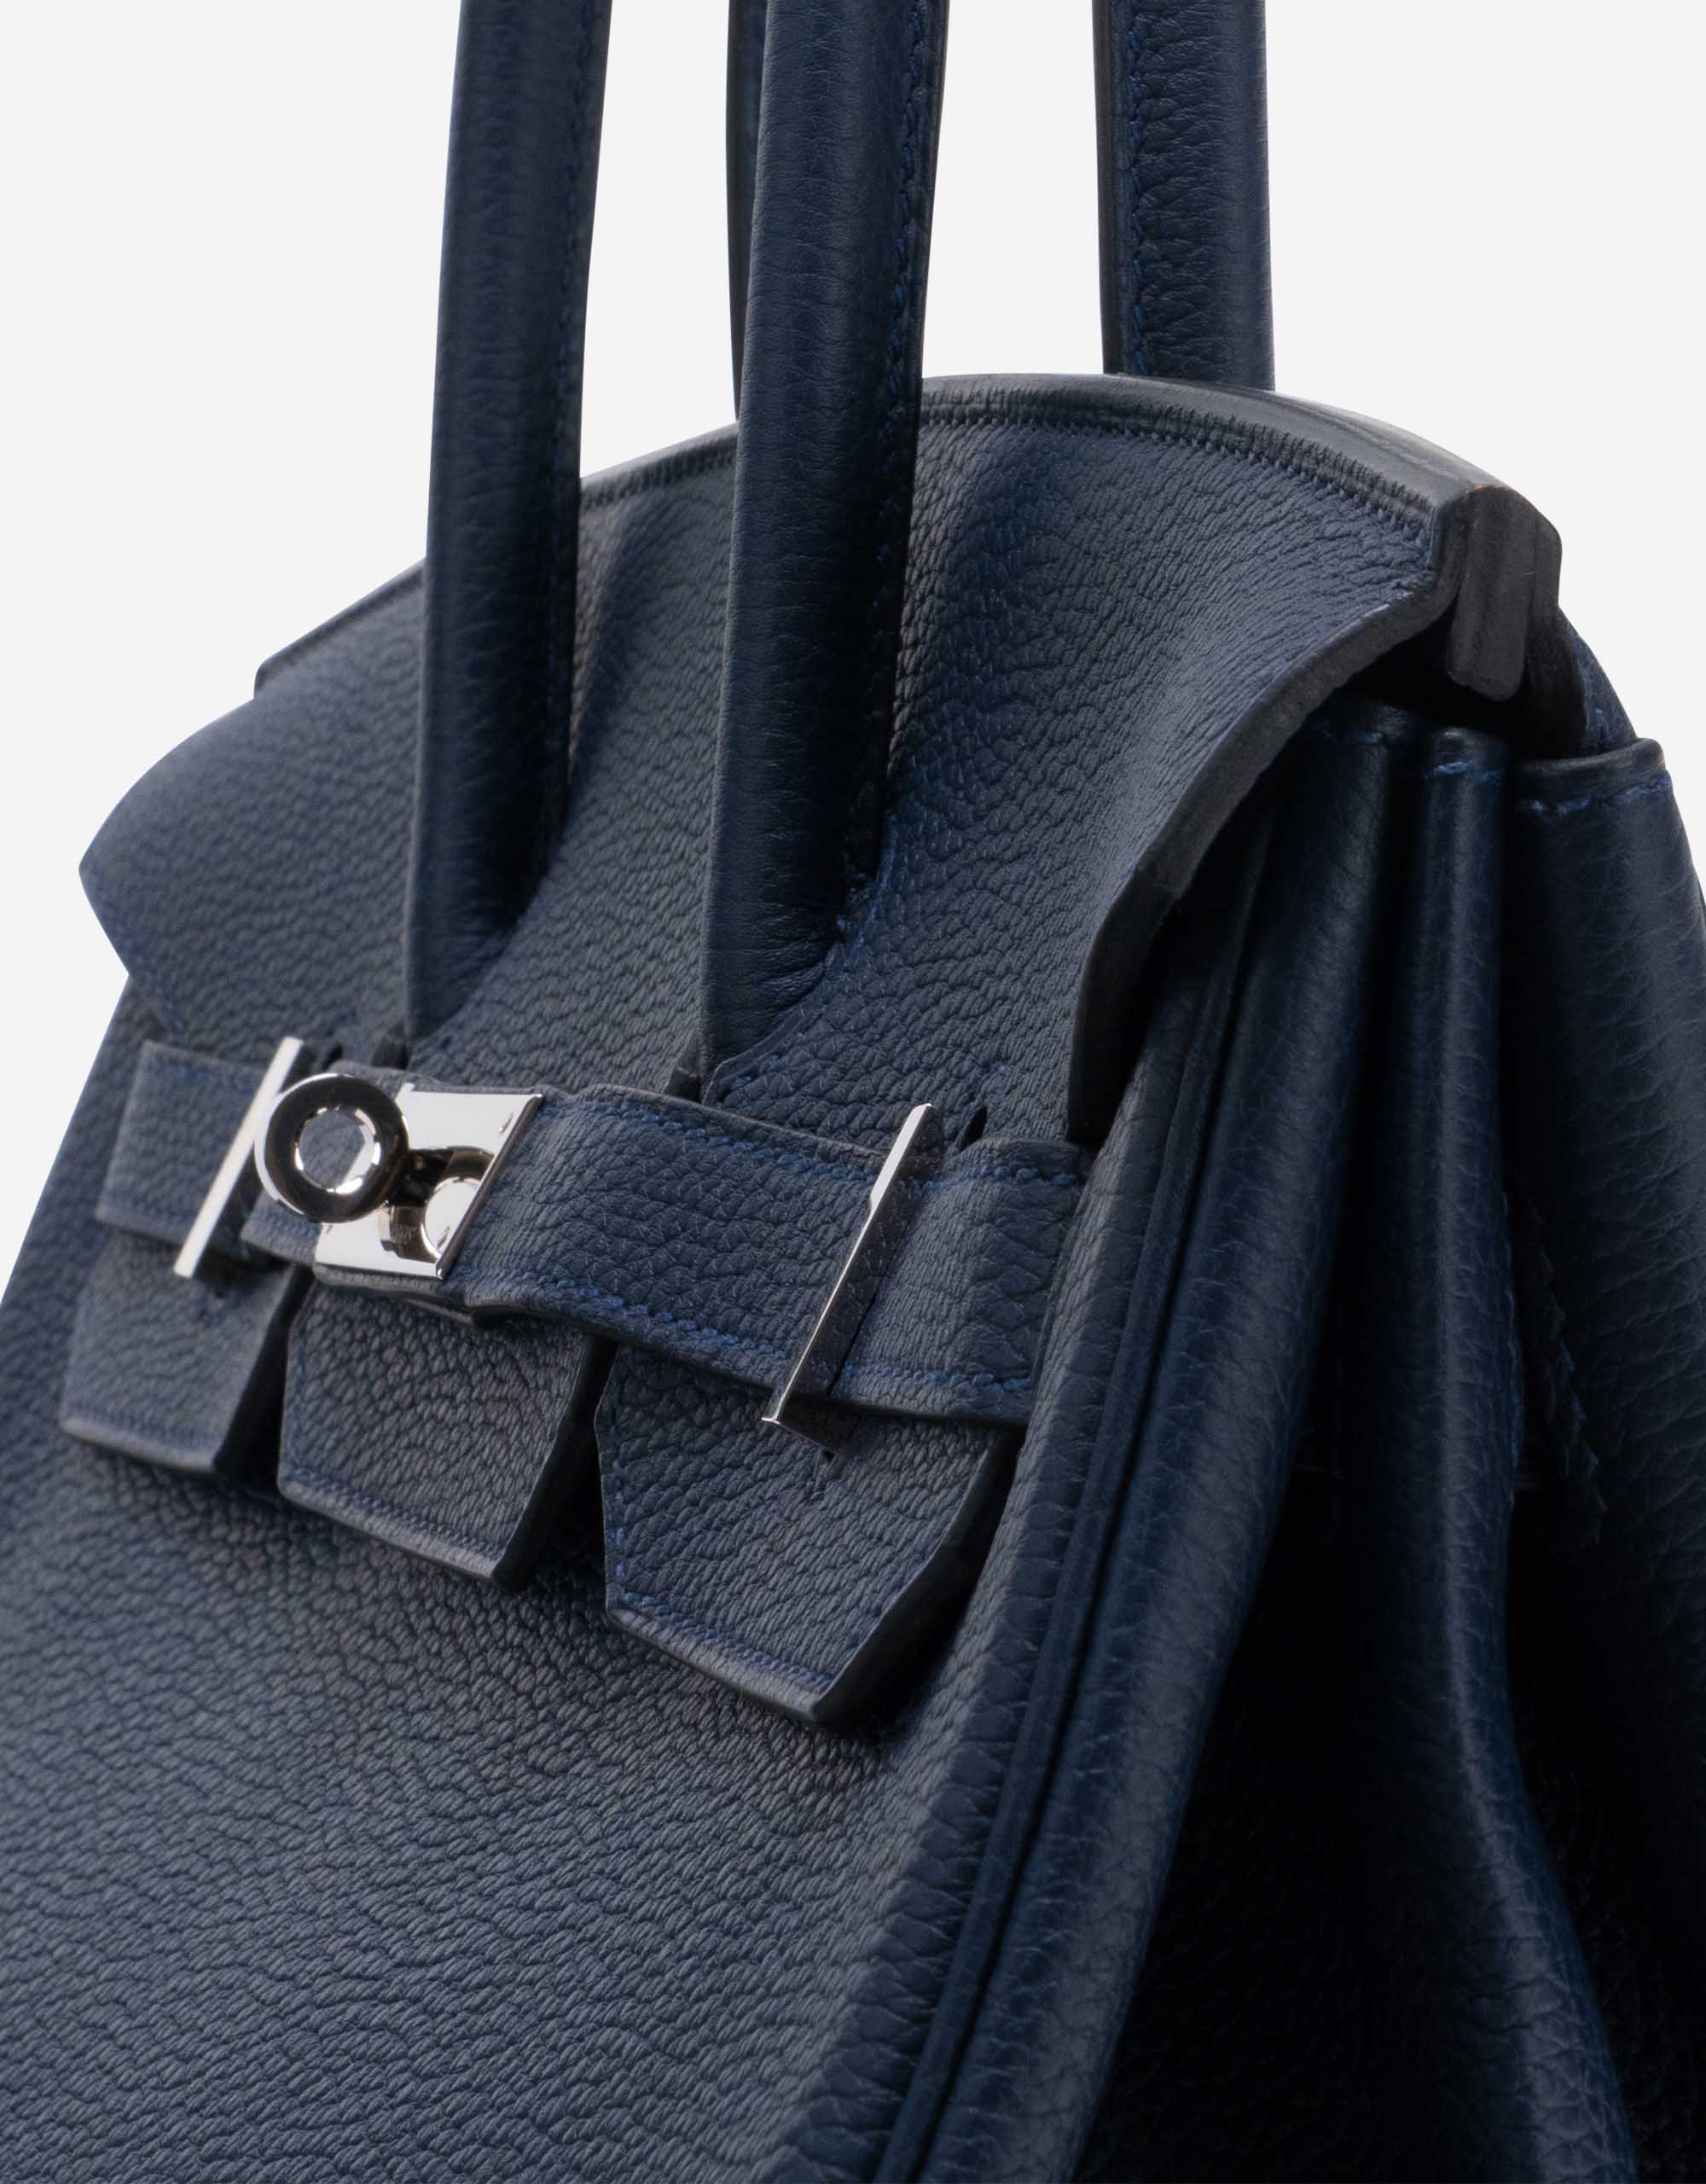 Hermes Blue Nuit Togo Leather Gold Hardware Birkin 35 Bag Hermes